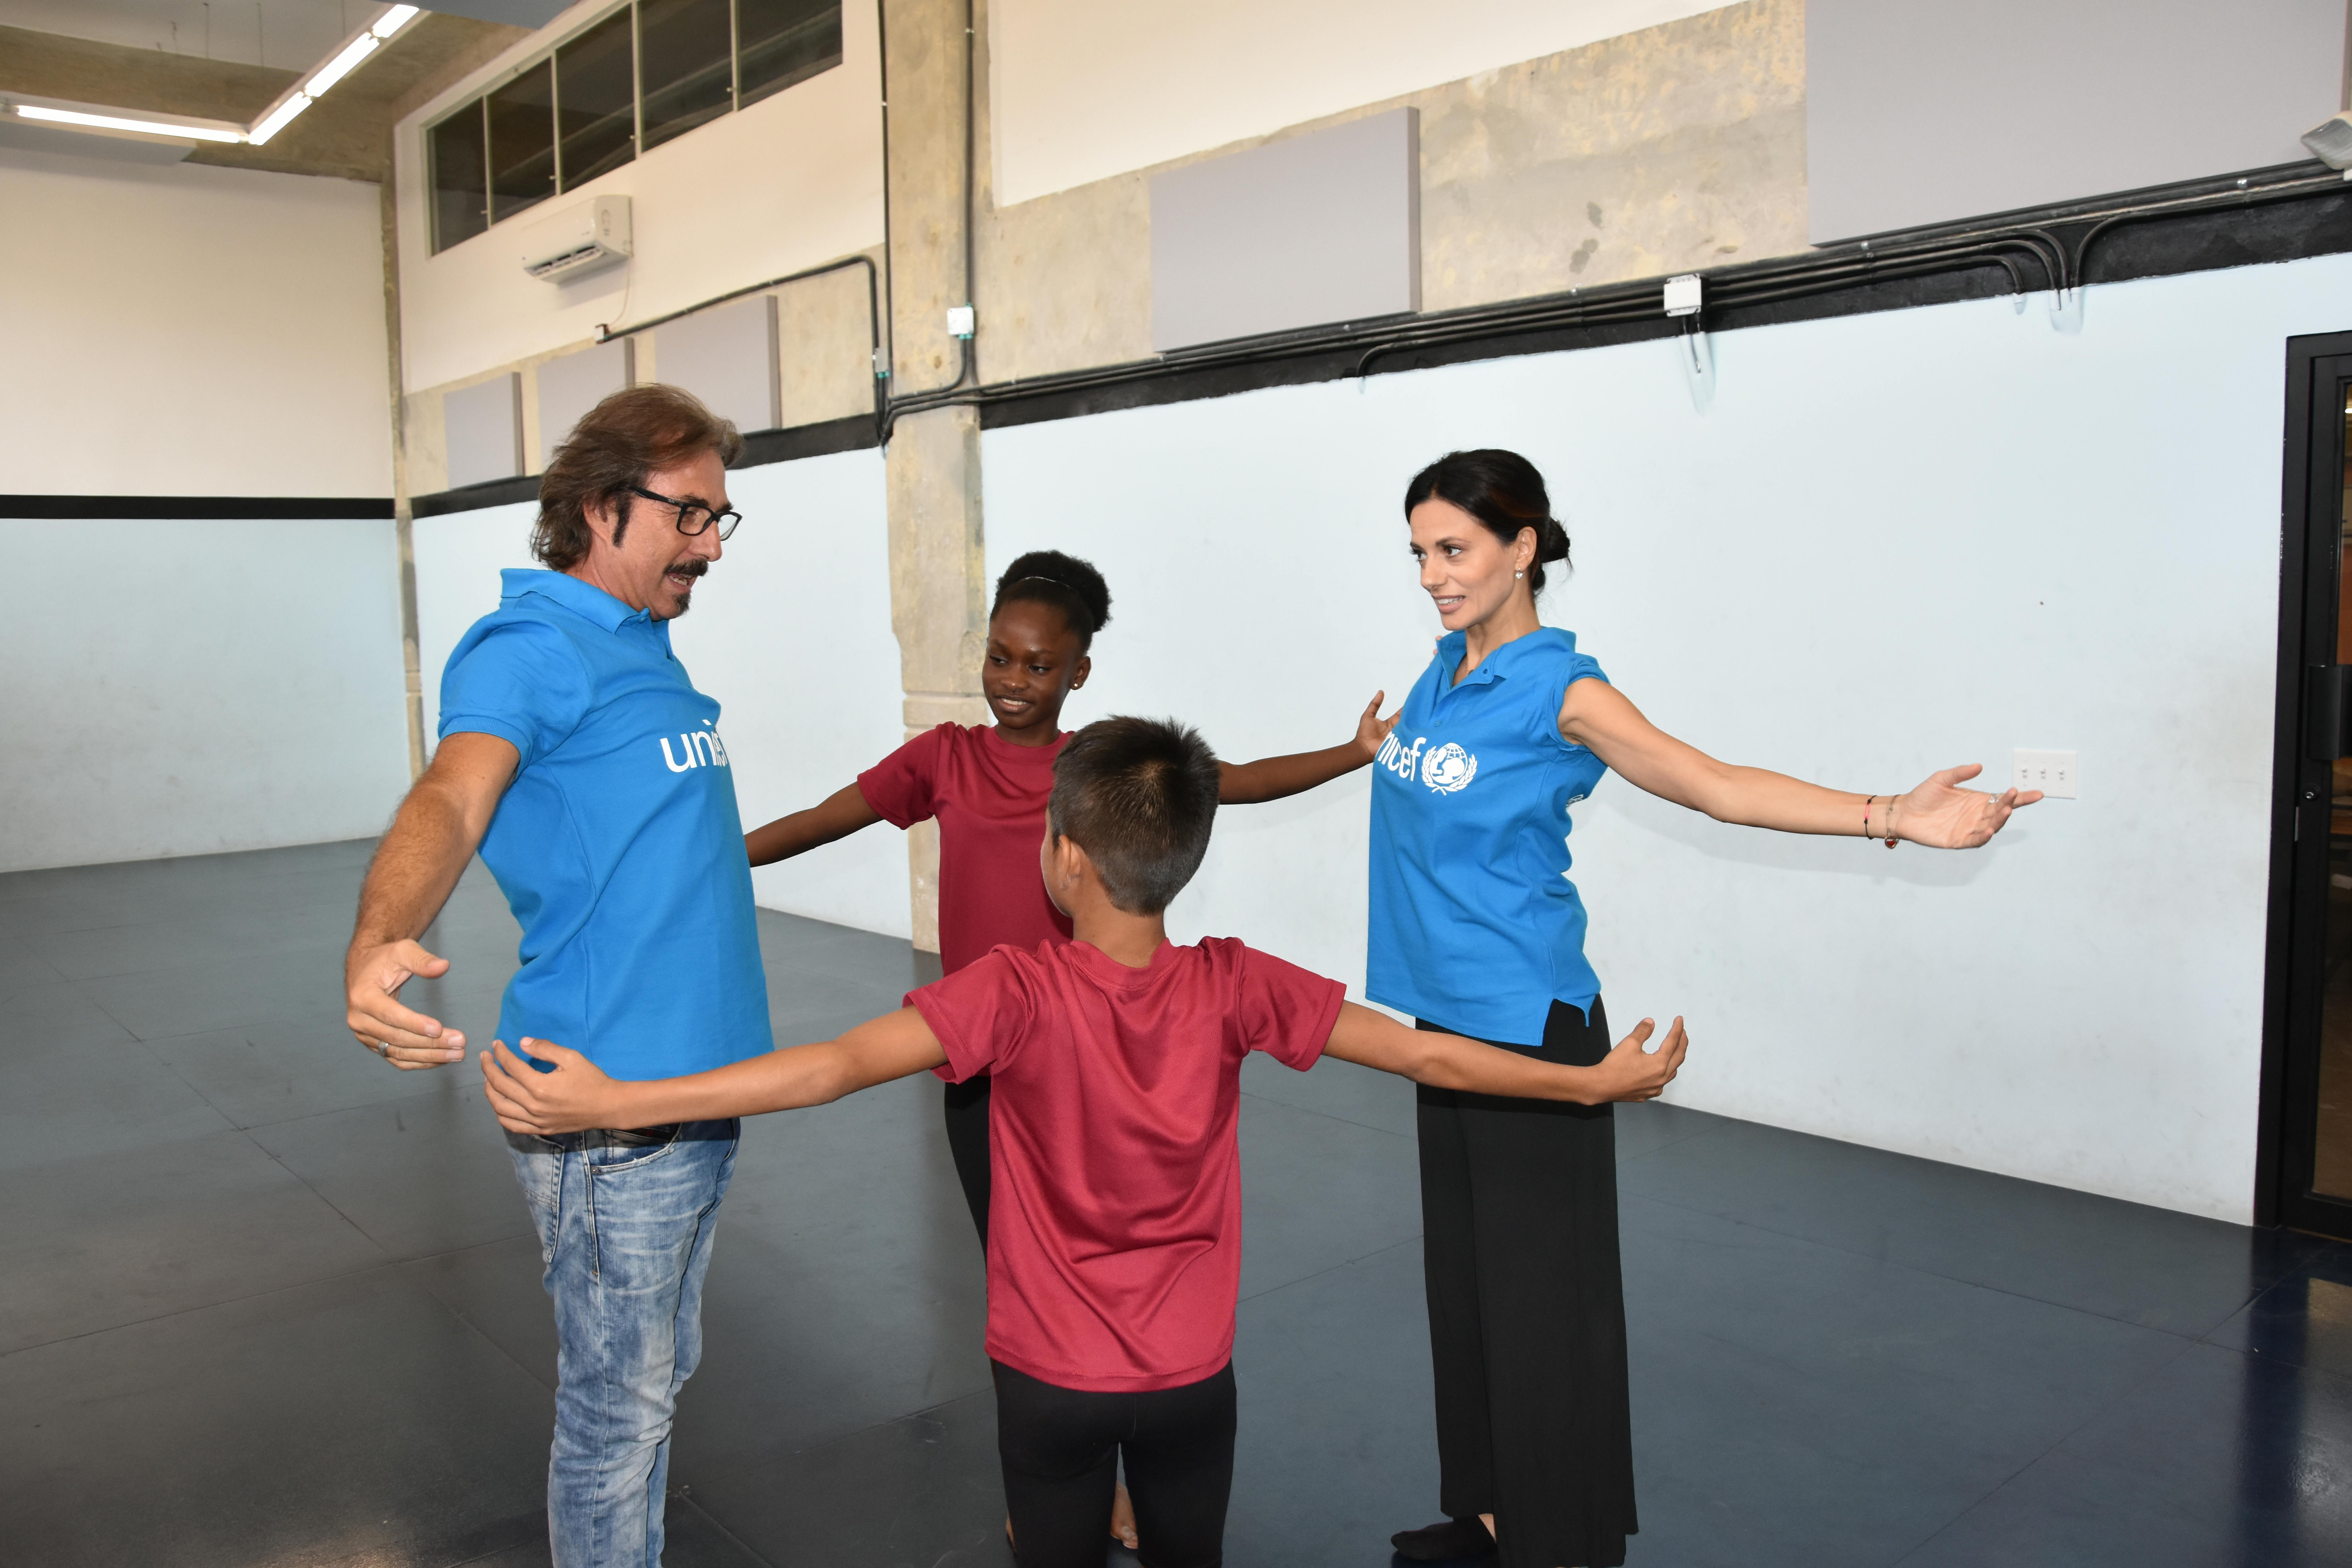 Luciano Cannito e Rossella Brescia a Panama visitano la scuola “Enlaces”. Qui bambini e ragazzi dai 9 ai 18 anni, che vivono in quartieri caratterizzati da alti livelli di povertà e violenza, imparano a danzare